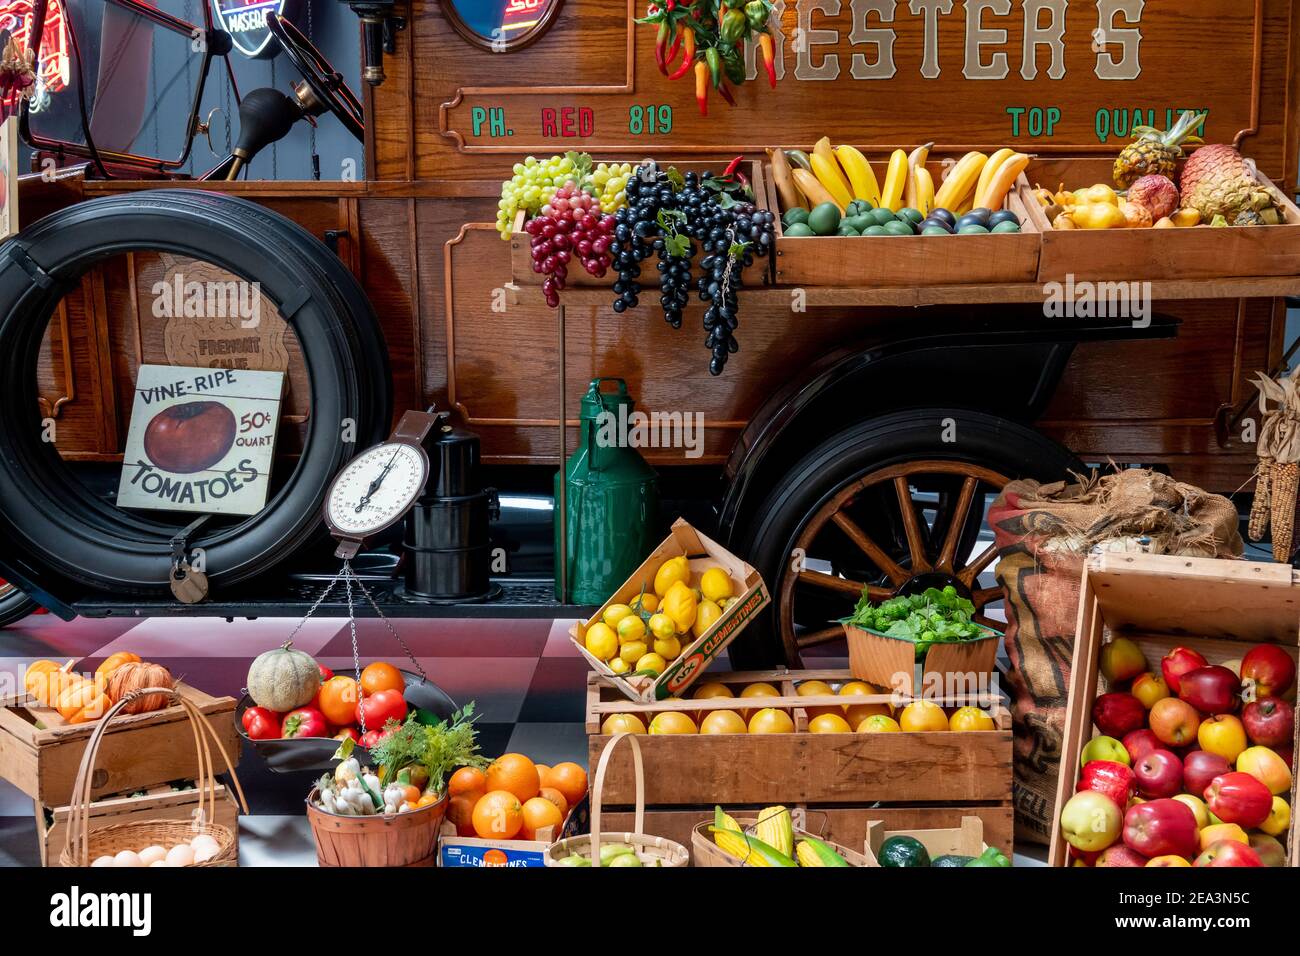 La zone de vente de fruits et légumes vintage est exposée derrière le camion Au musée de Key Banque D'Images